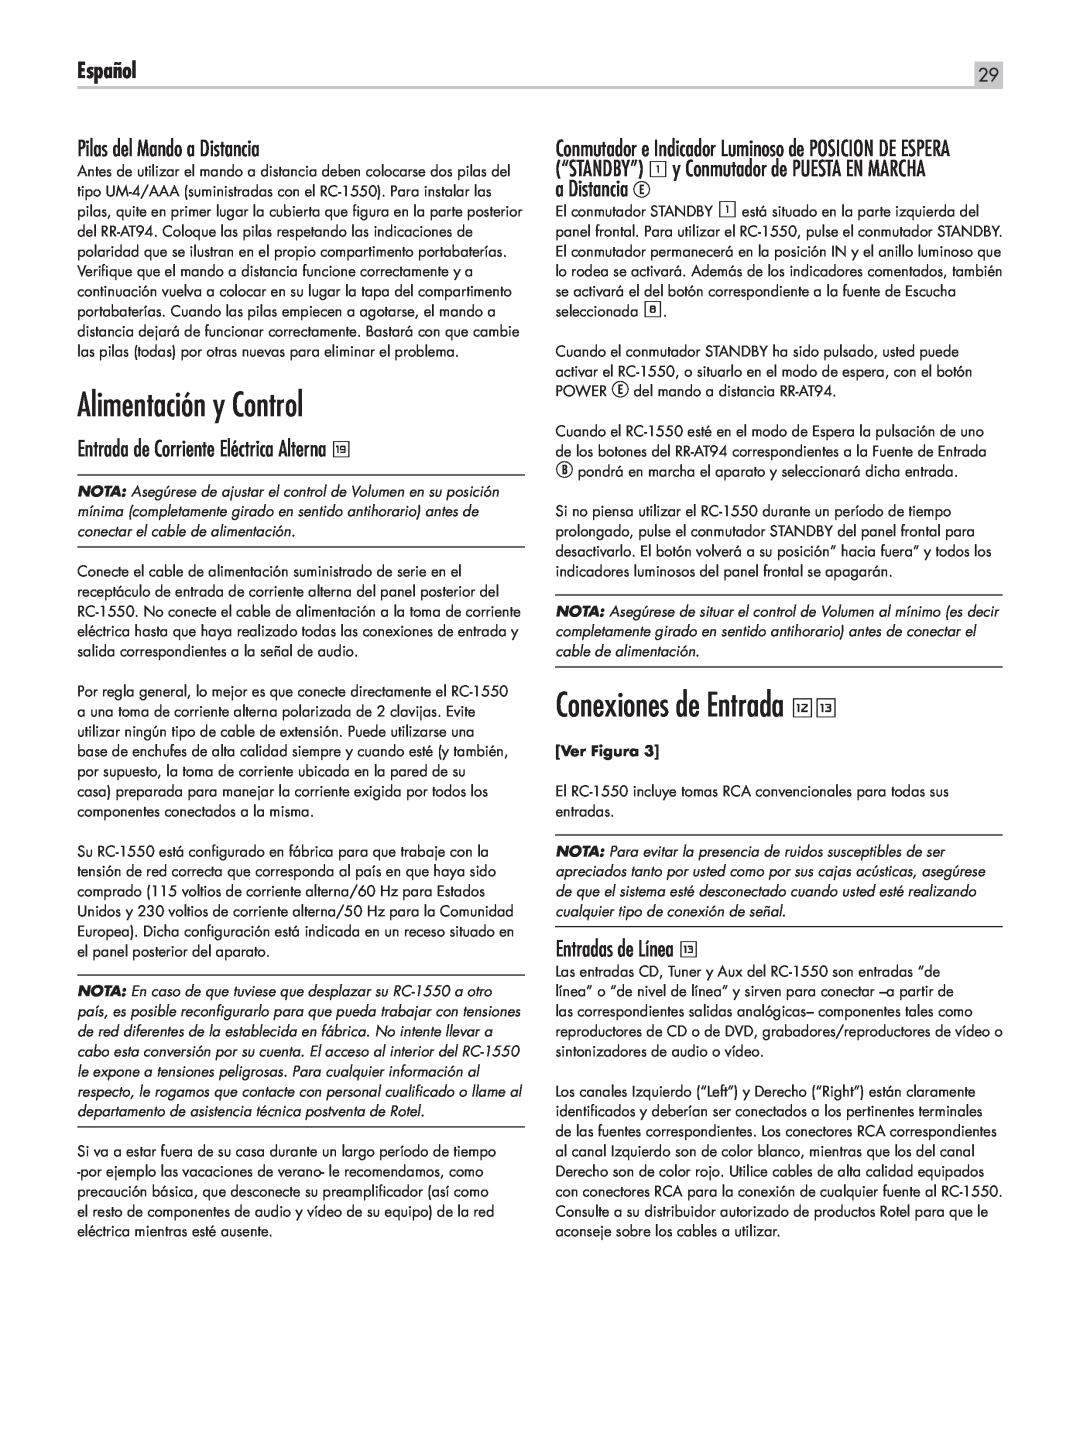 Rotel RC-1550 Alimentación y Control, Conexiones de Entrada =q, Pilas del Mando a Distancia, a Distancia E, Español 